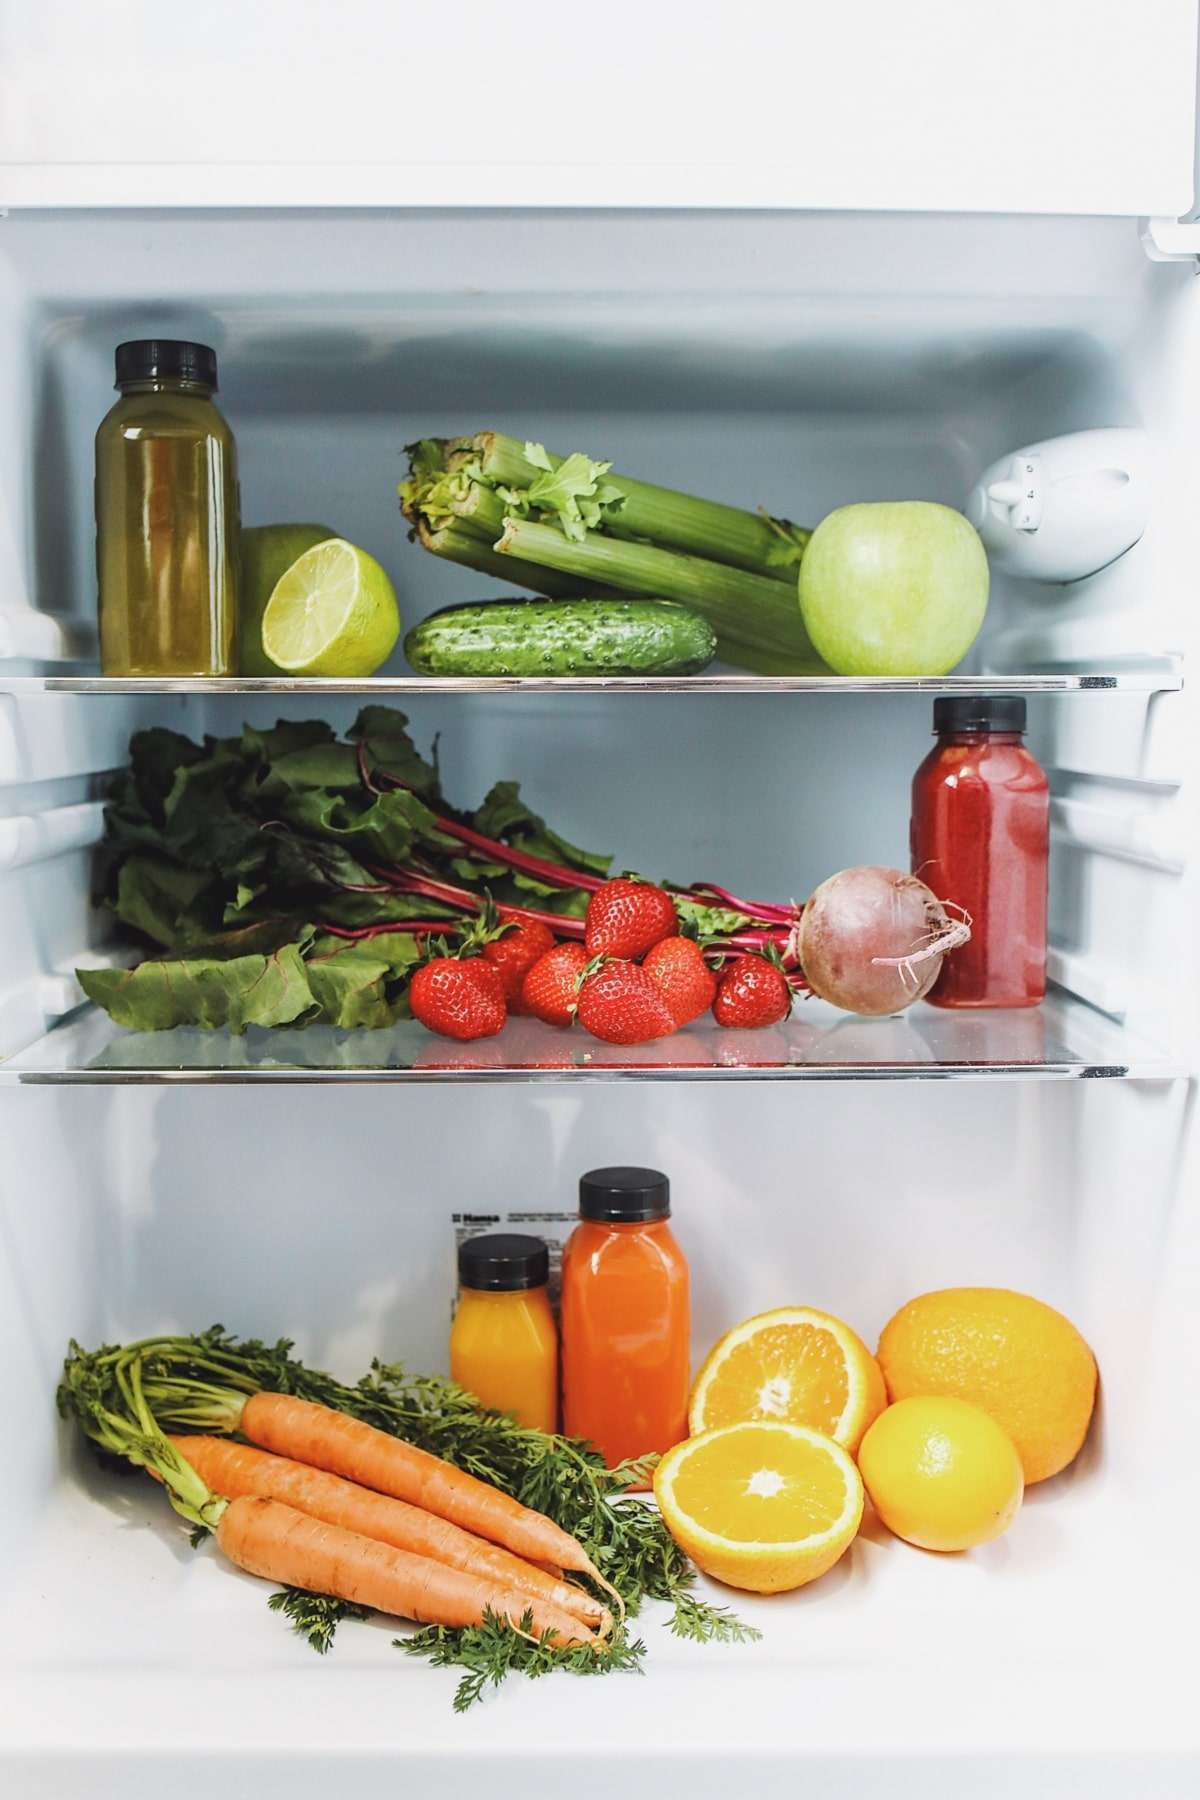 inside the 12v refrigerator